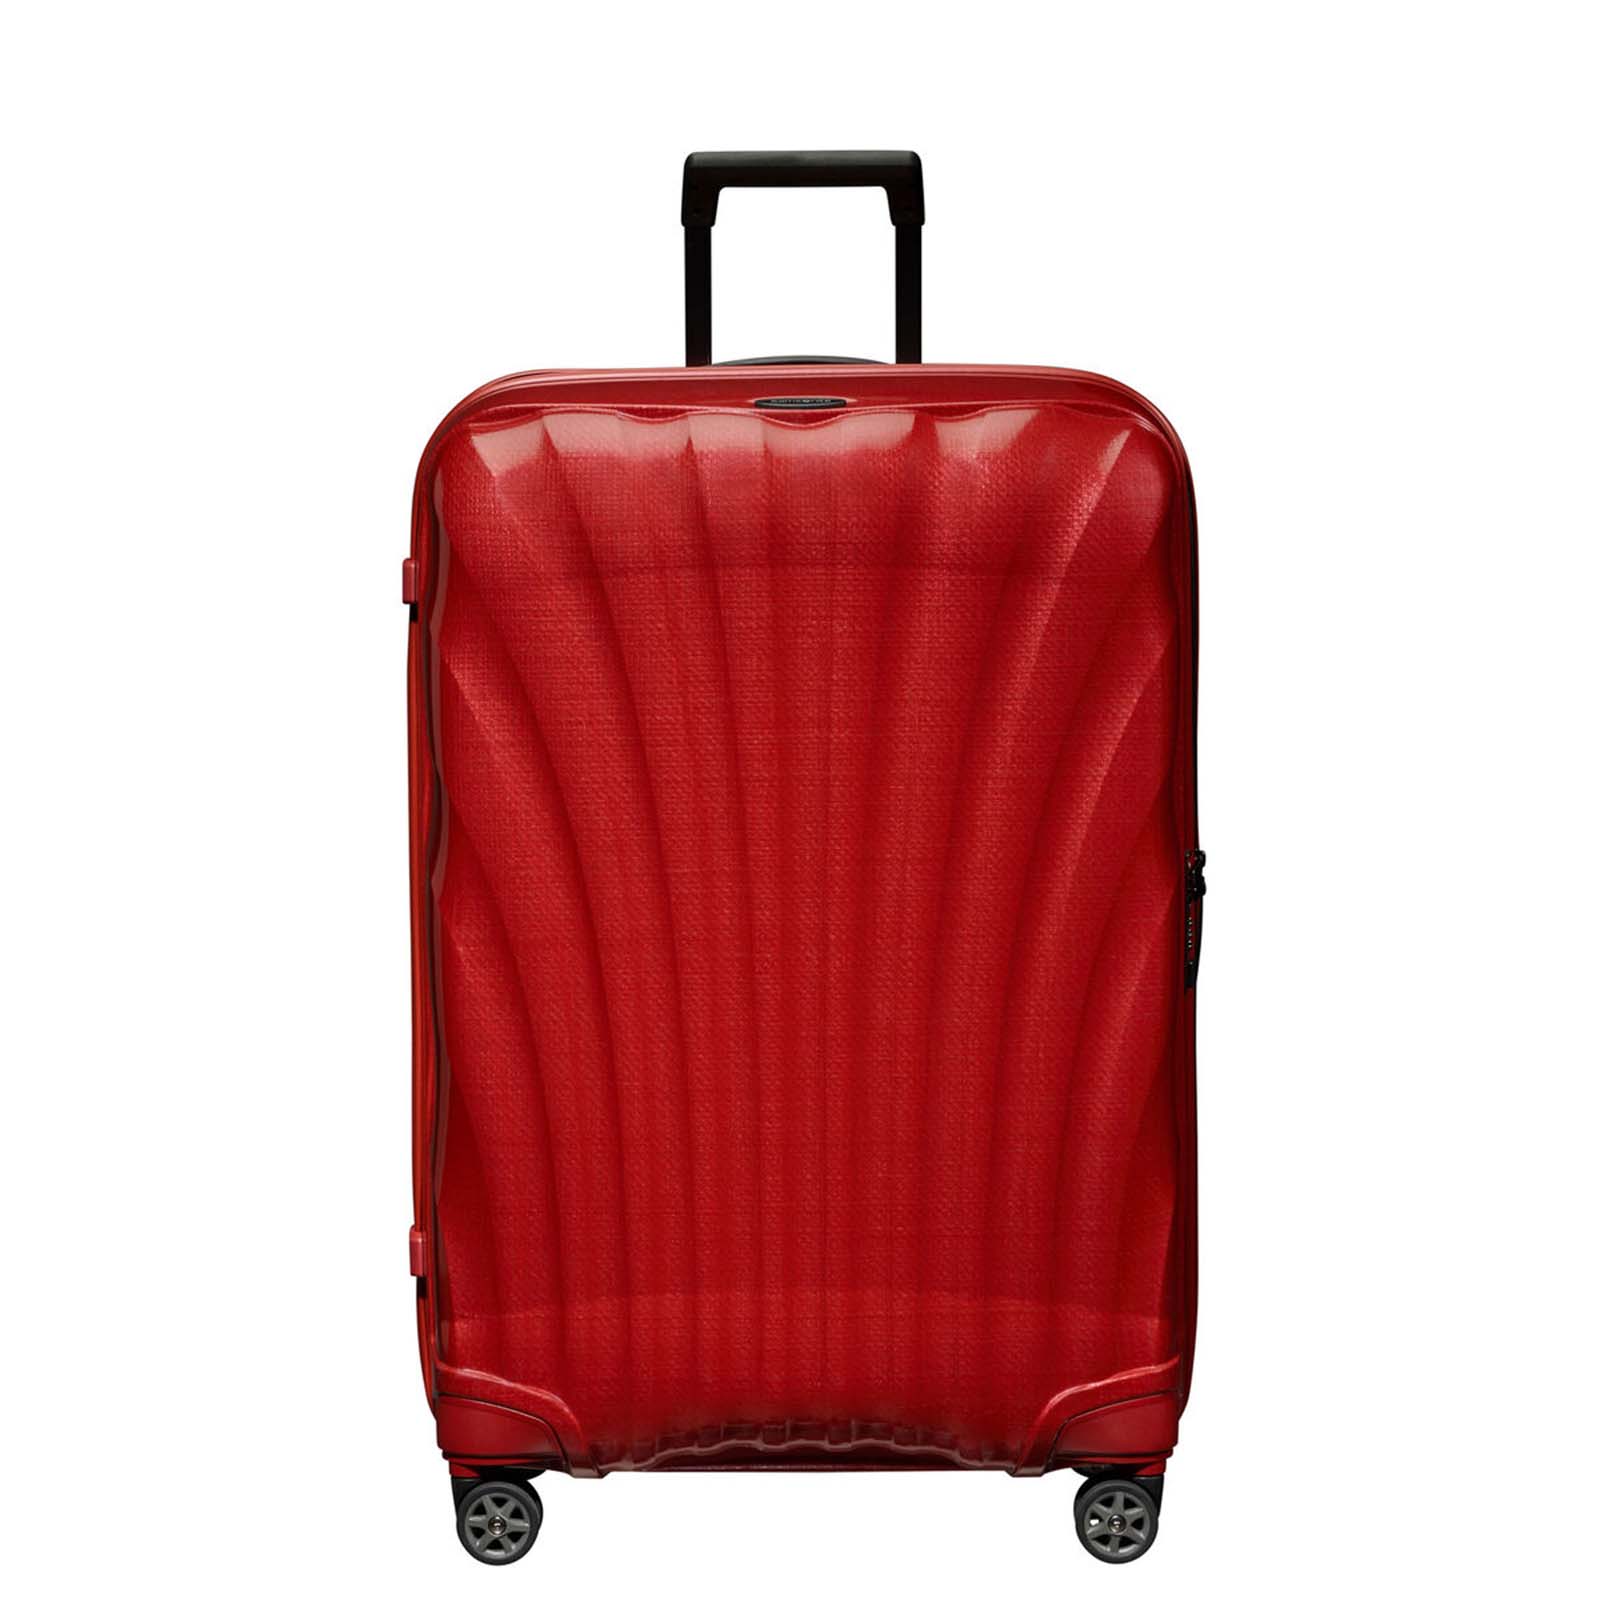 Samsonite-C-Lite-75cm-Suitcase-Chili-Red-Front